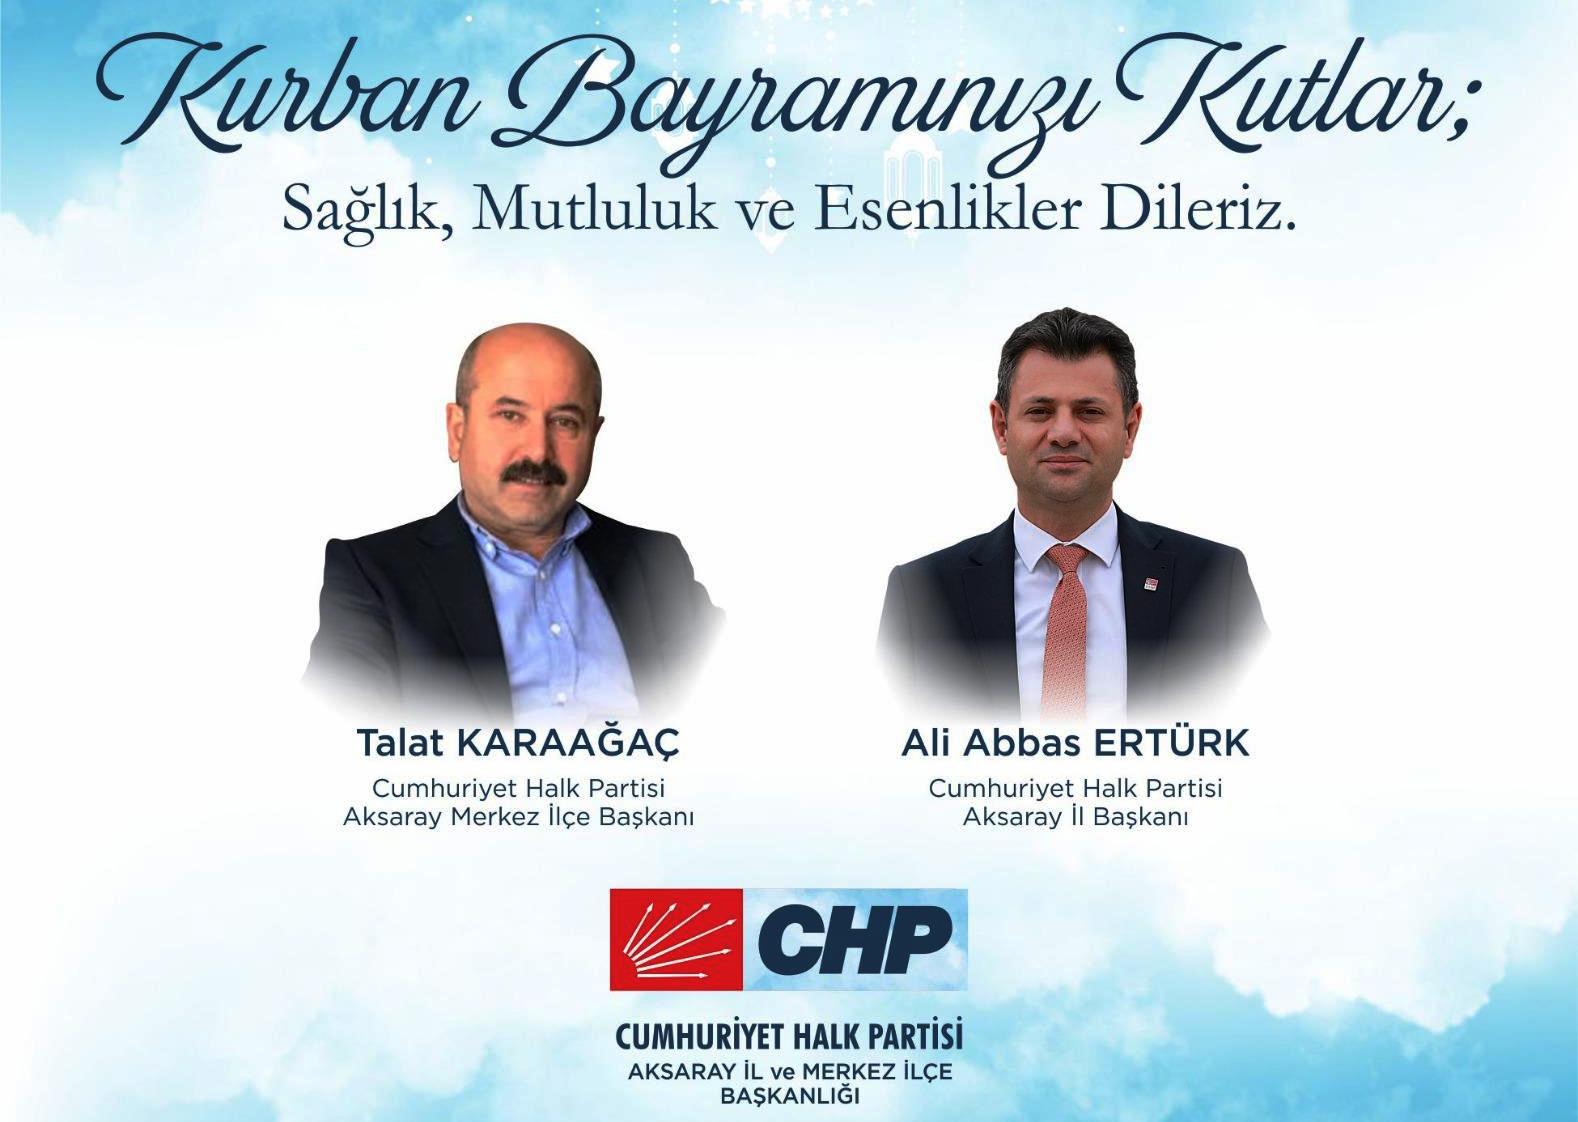 CHP Aksaray İl Başkanı Ali Abbas Ertürk’ün Kurban Bayramı Mesajı